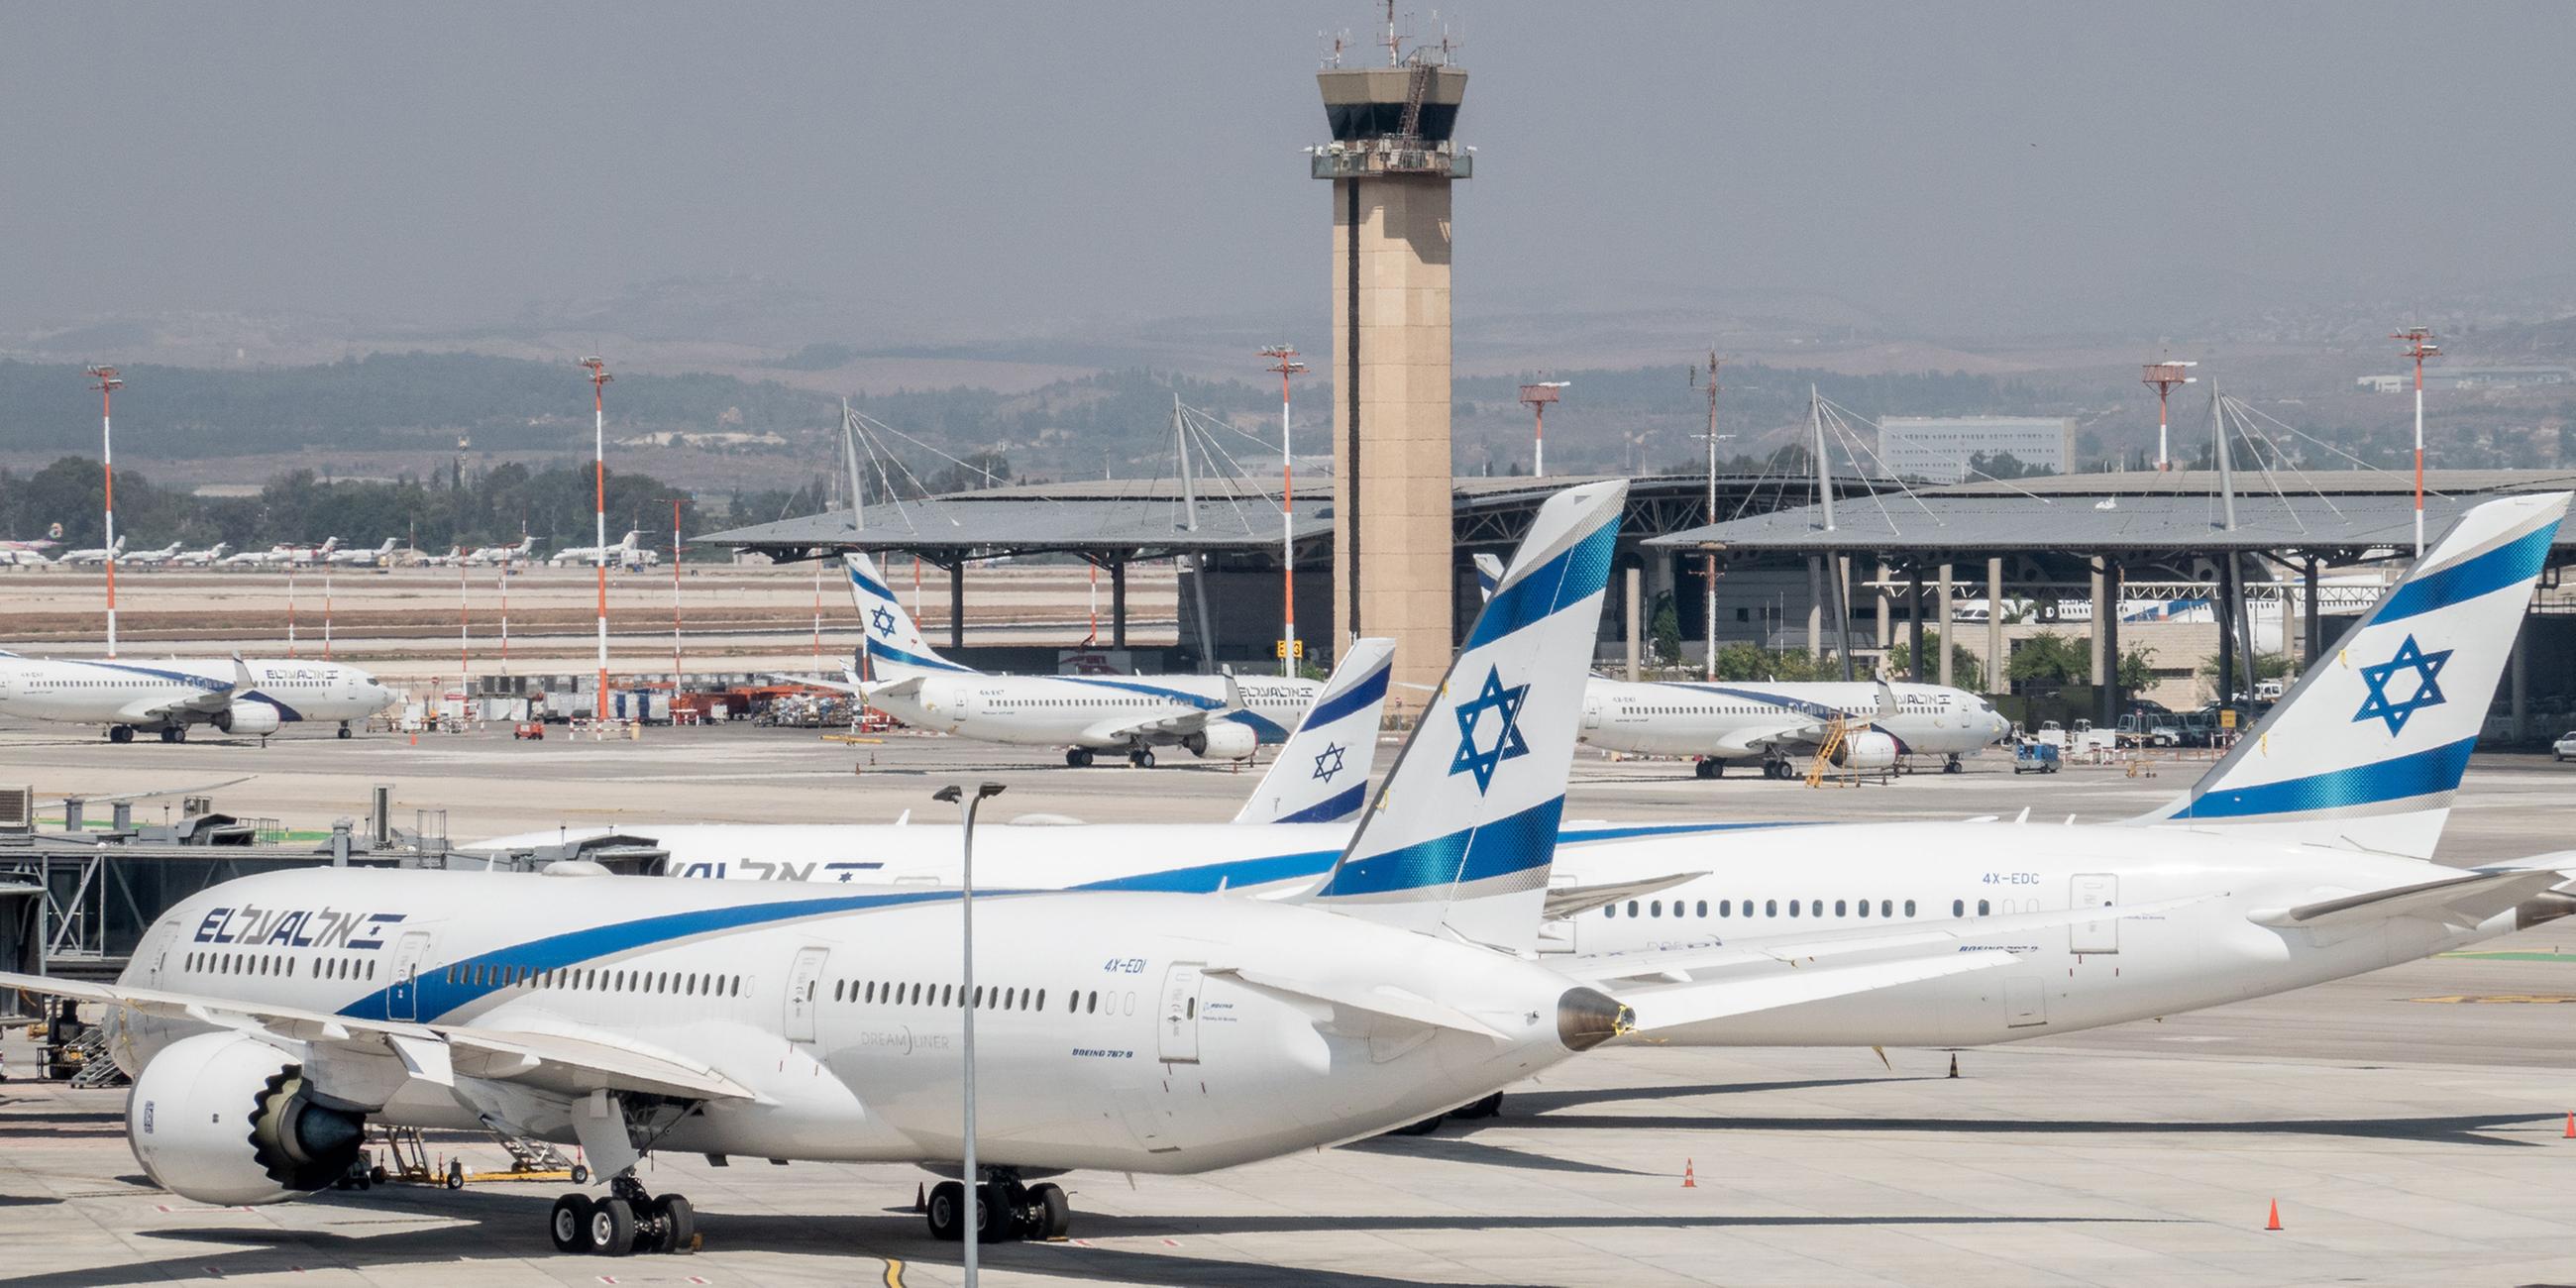 Flugzeuge der israelischen Fluggesellschaft El Al Airlines auf dem Flughafen Ben Gurion International Airport. 